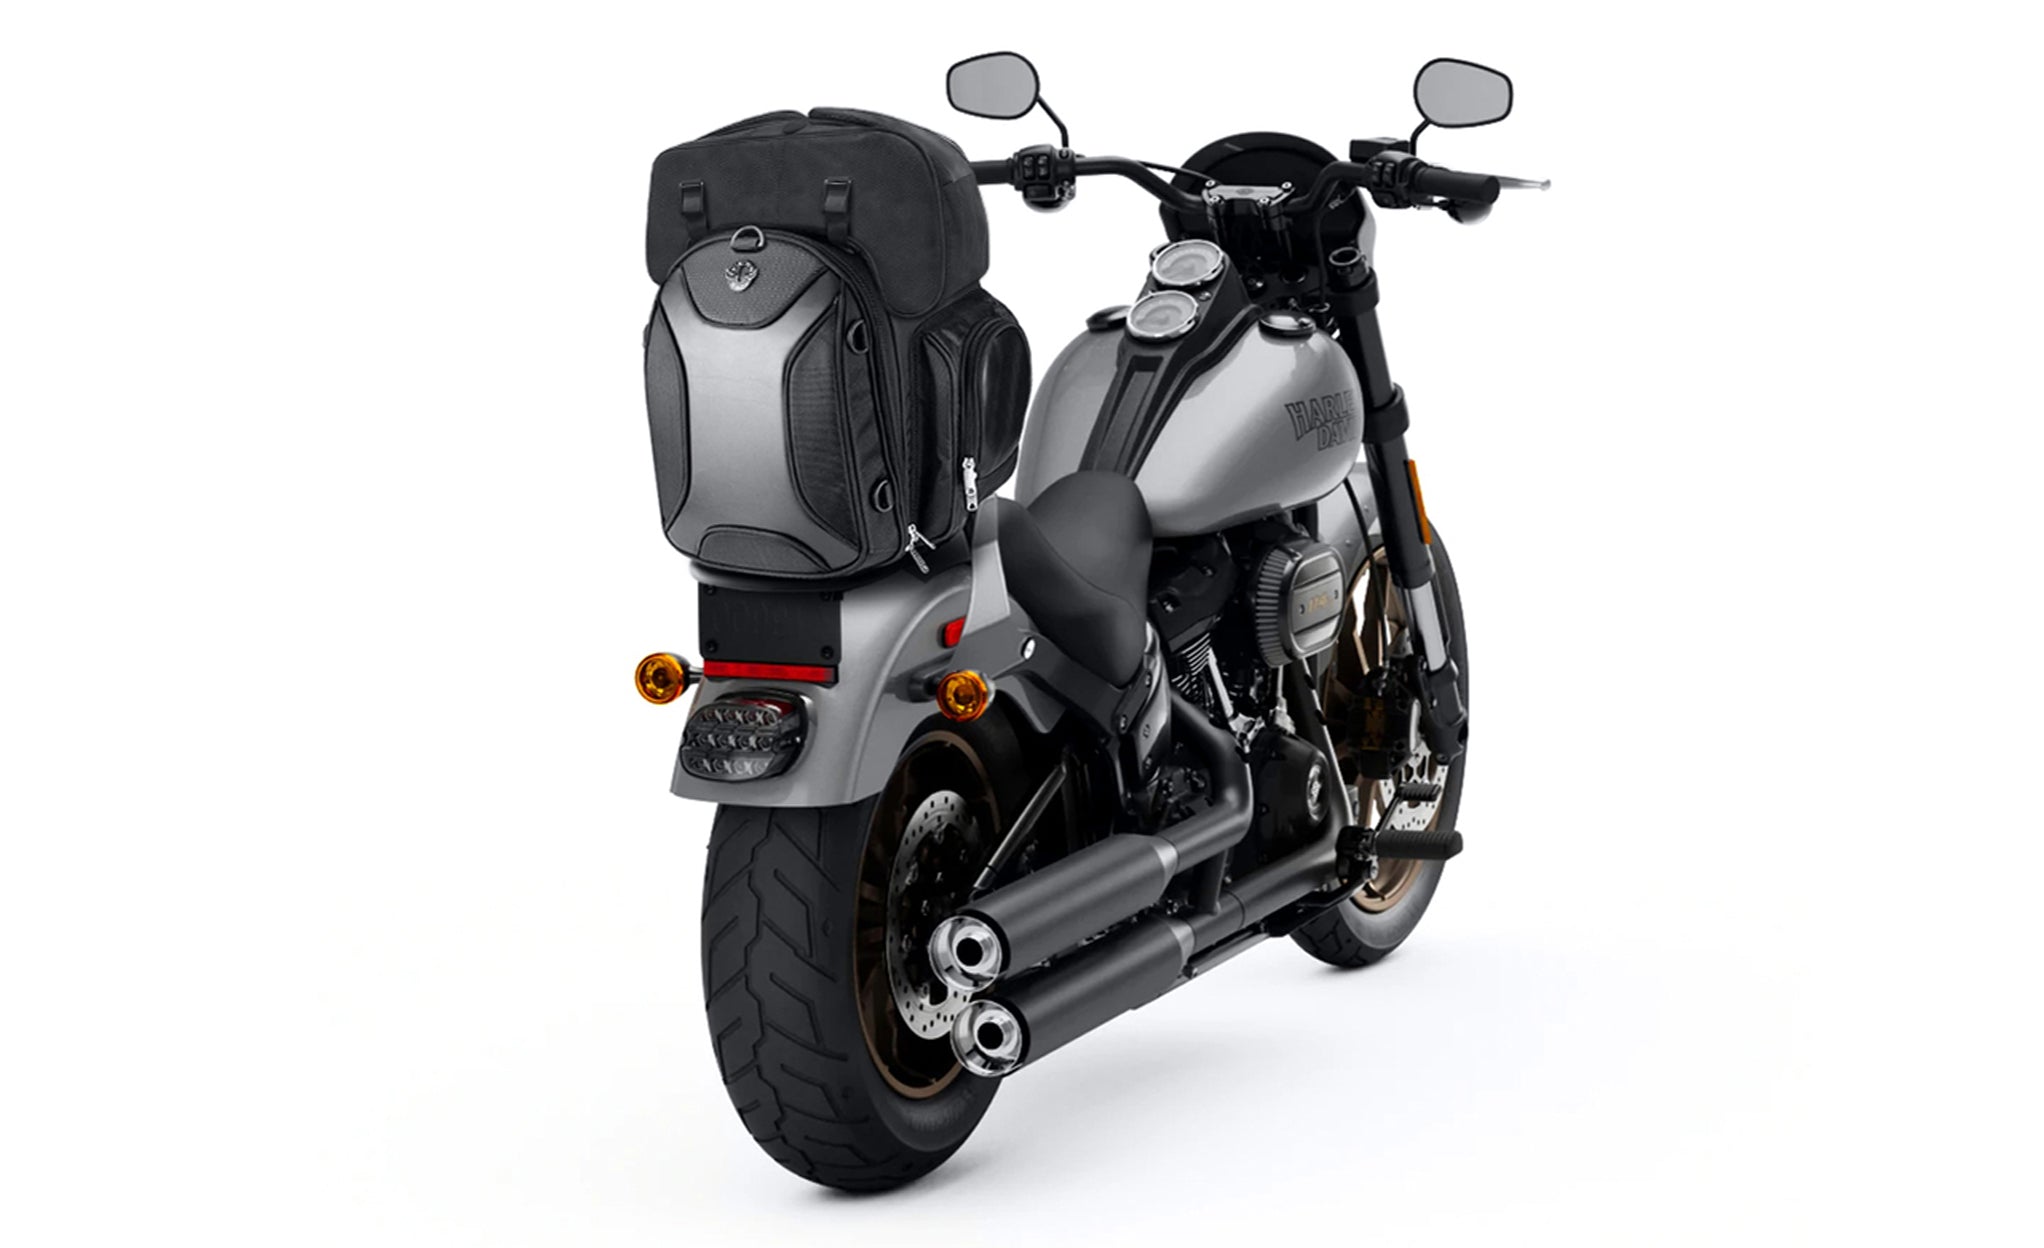 Viking Dagr Extra Large Motorcycle Tail Bag Bag on Bike View @expand